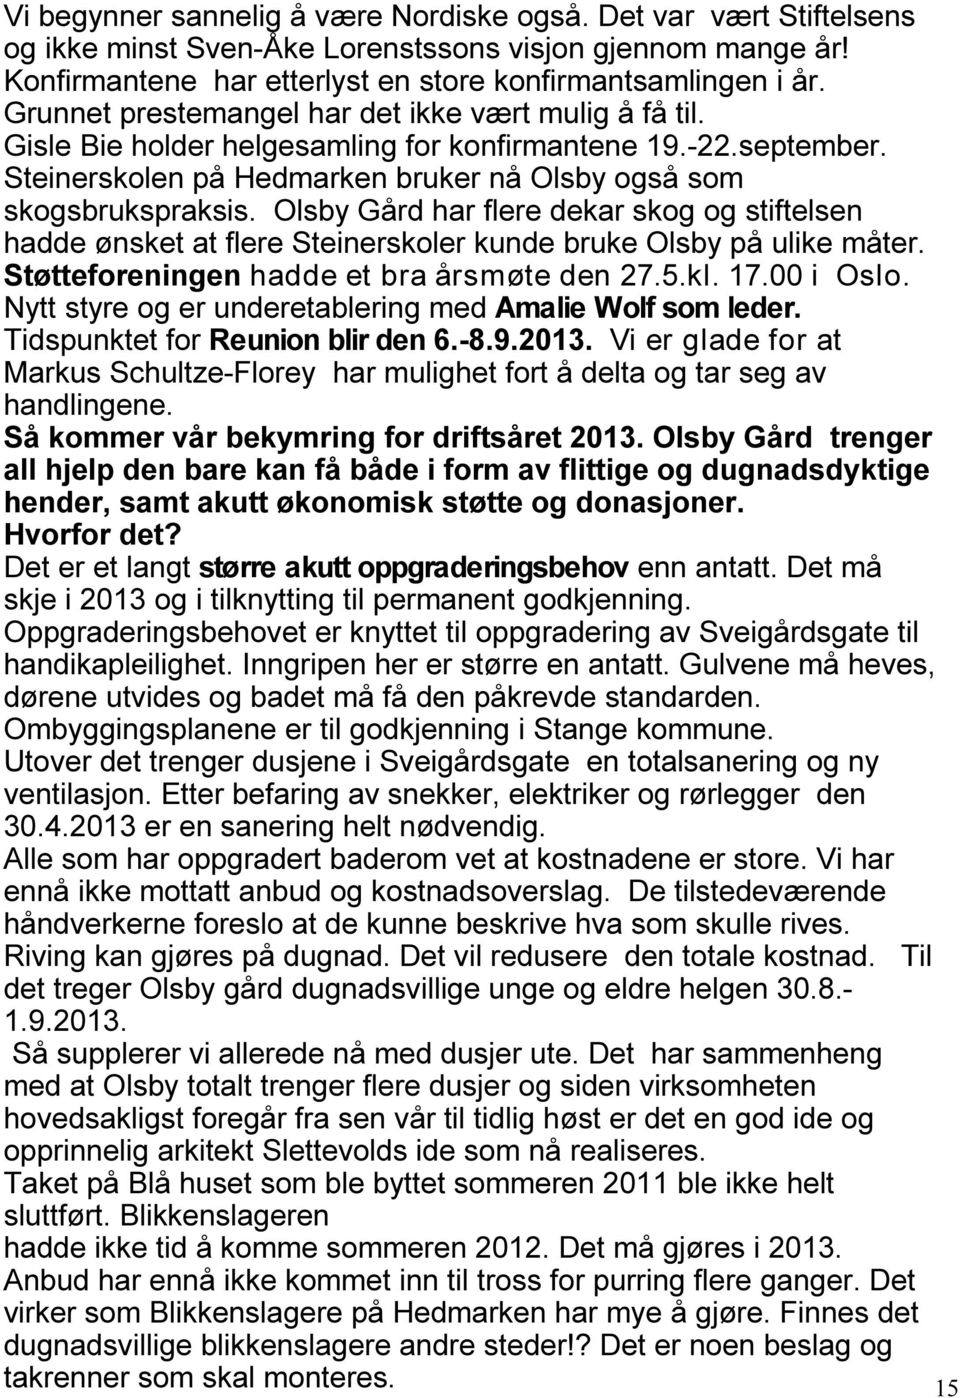 Olsby Gård har flere dekar skog og stiftelsen hadde ønsket at flere Steinerskoler kunde bruke Olsby på ulike måter. Støtteforeningen hadde et bra årsmøte den 27.5.kl. 17.00 i Oslo.